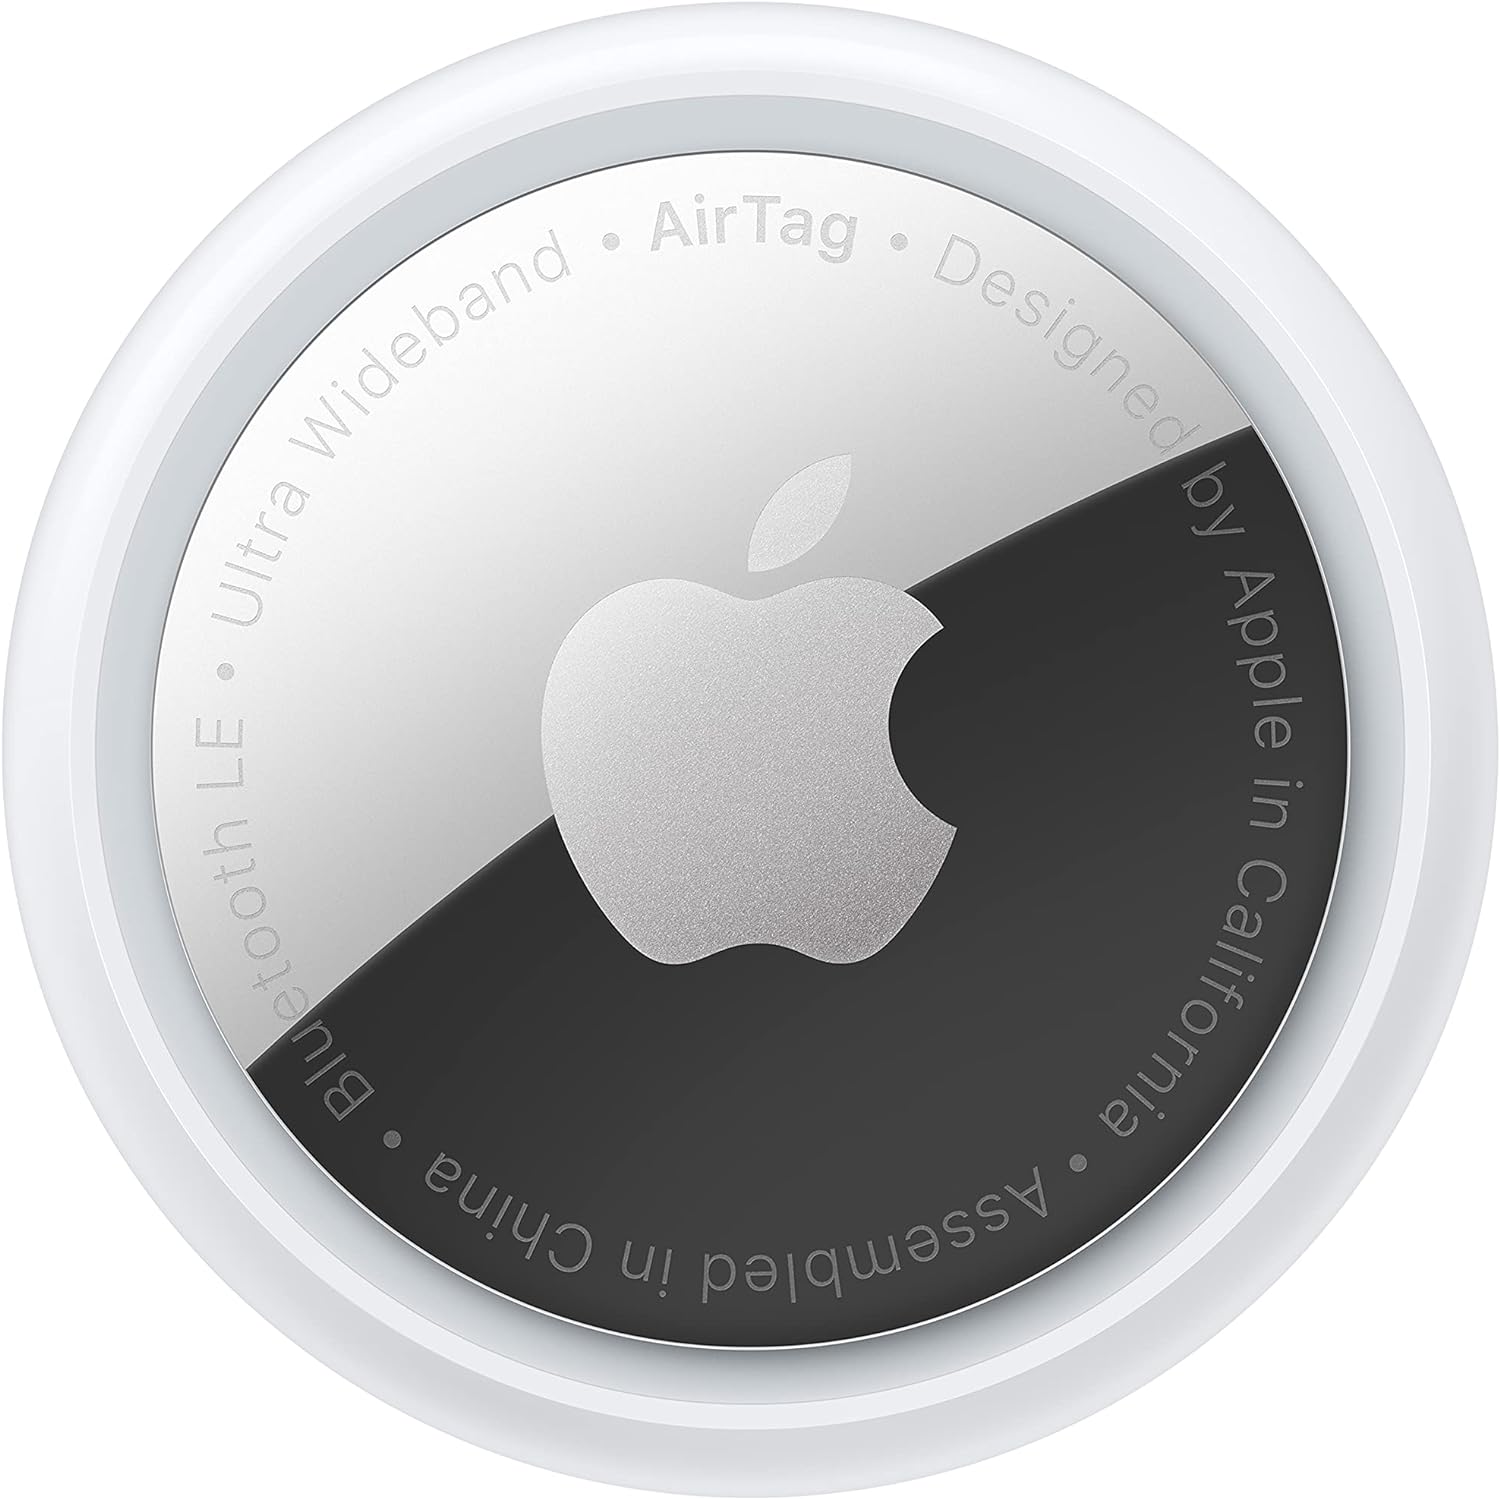 Apple Nuevo AirTag (Paquete de 4)